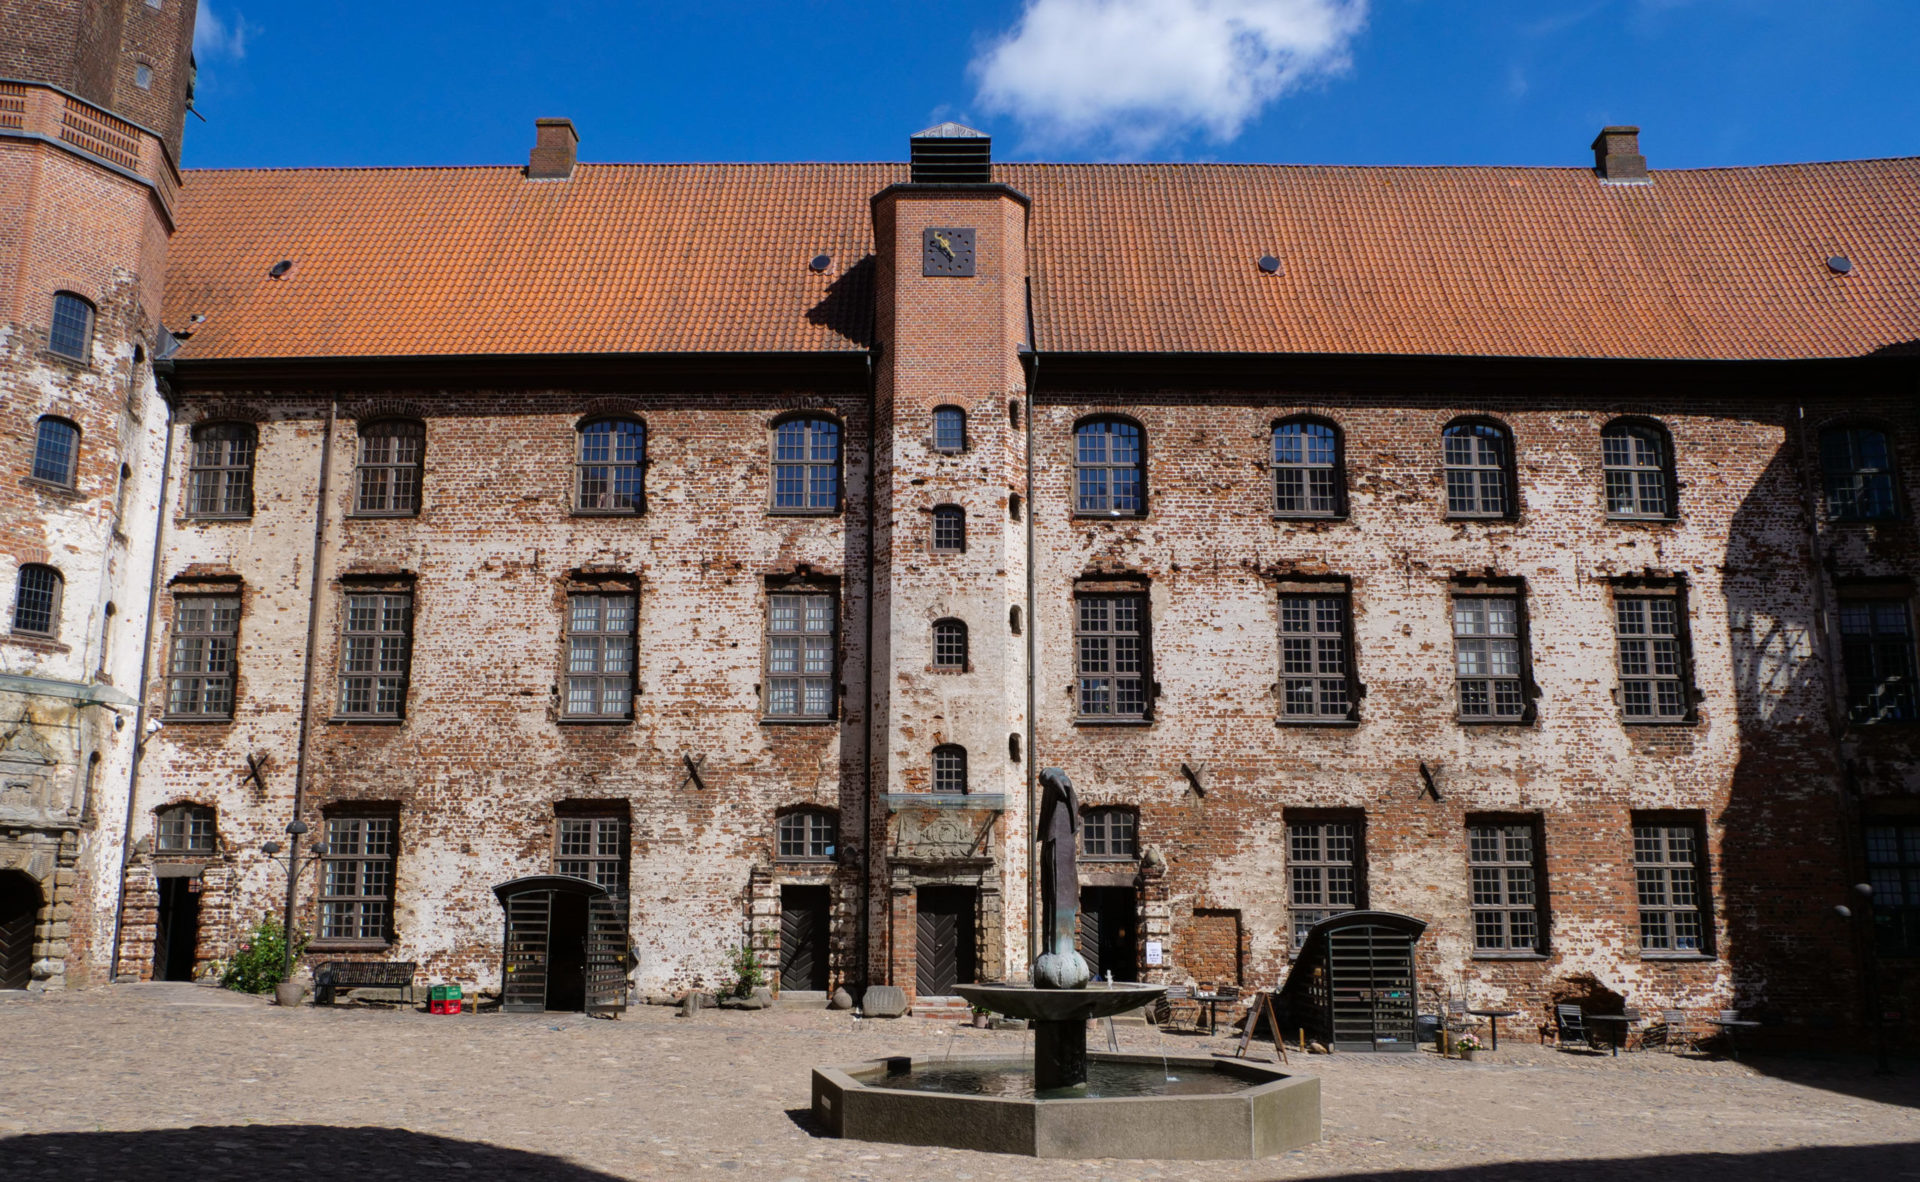 Das Schloss Koldinghus ist ein dänisches Königsschloss in der Stadt Kolding im südlichen Teil von Jütland.